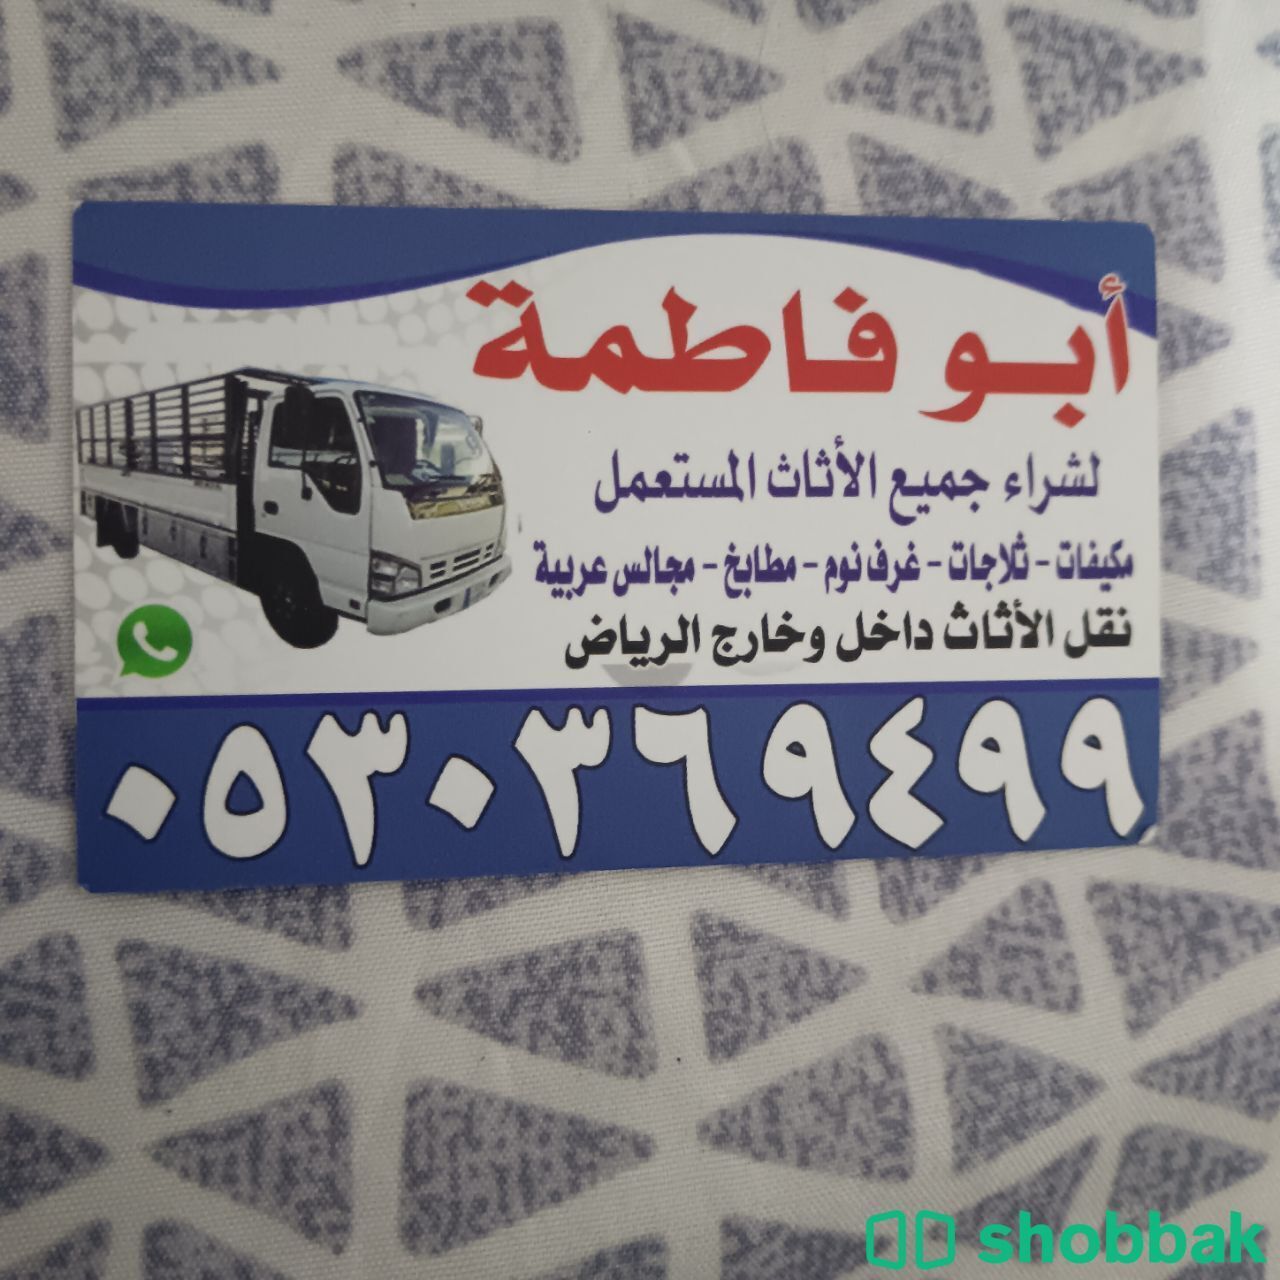 شراء أثاث مستعمل حي ظهرة لبن 0530369499  Shobbak Saudi Arabia